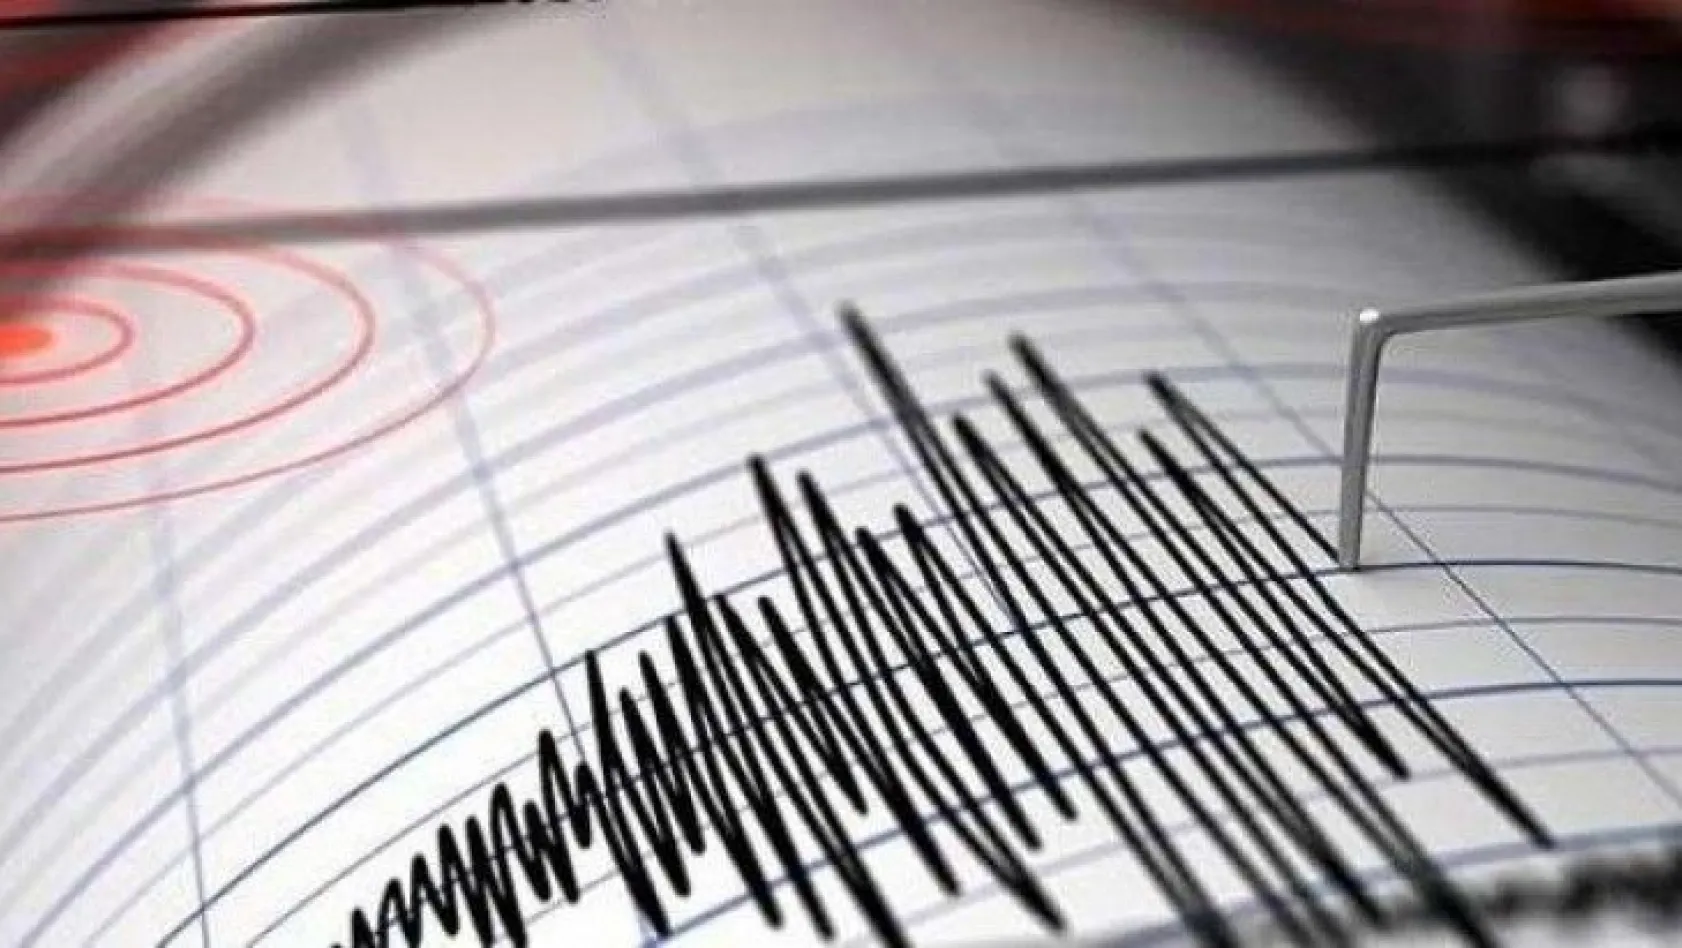 İran'da 5.9 büyüklüğünde deprem